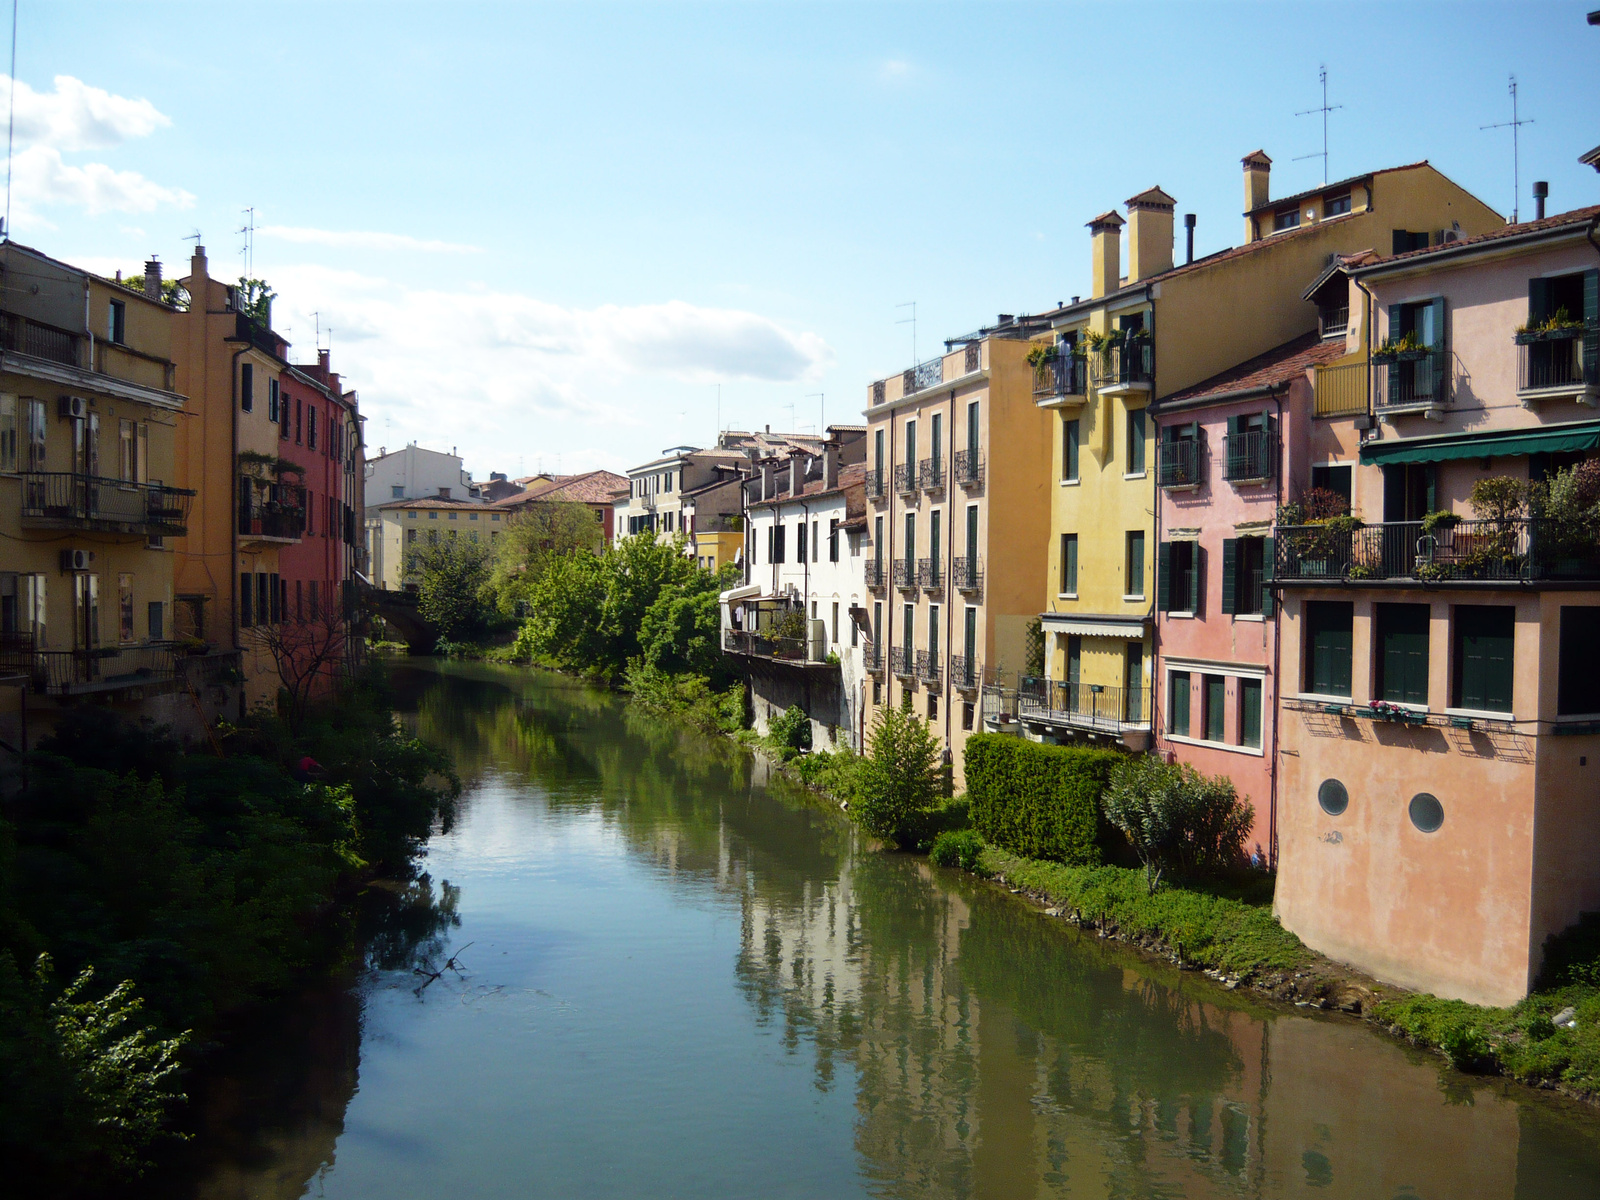 River Bacchiglione, Padova